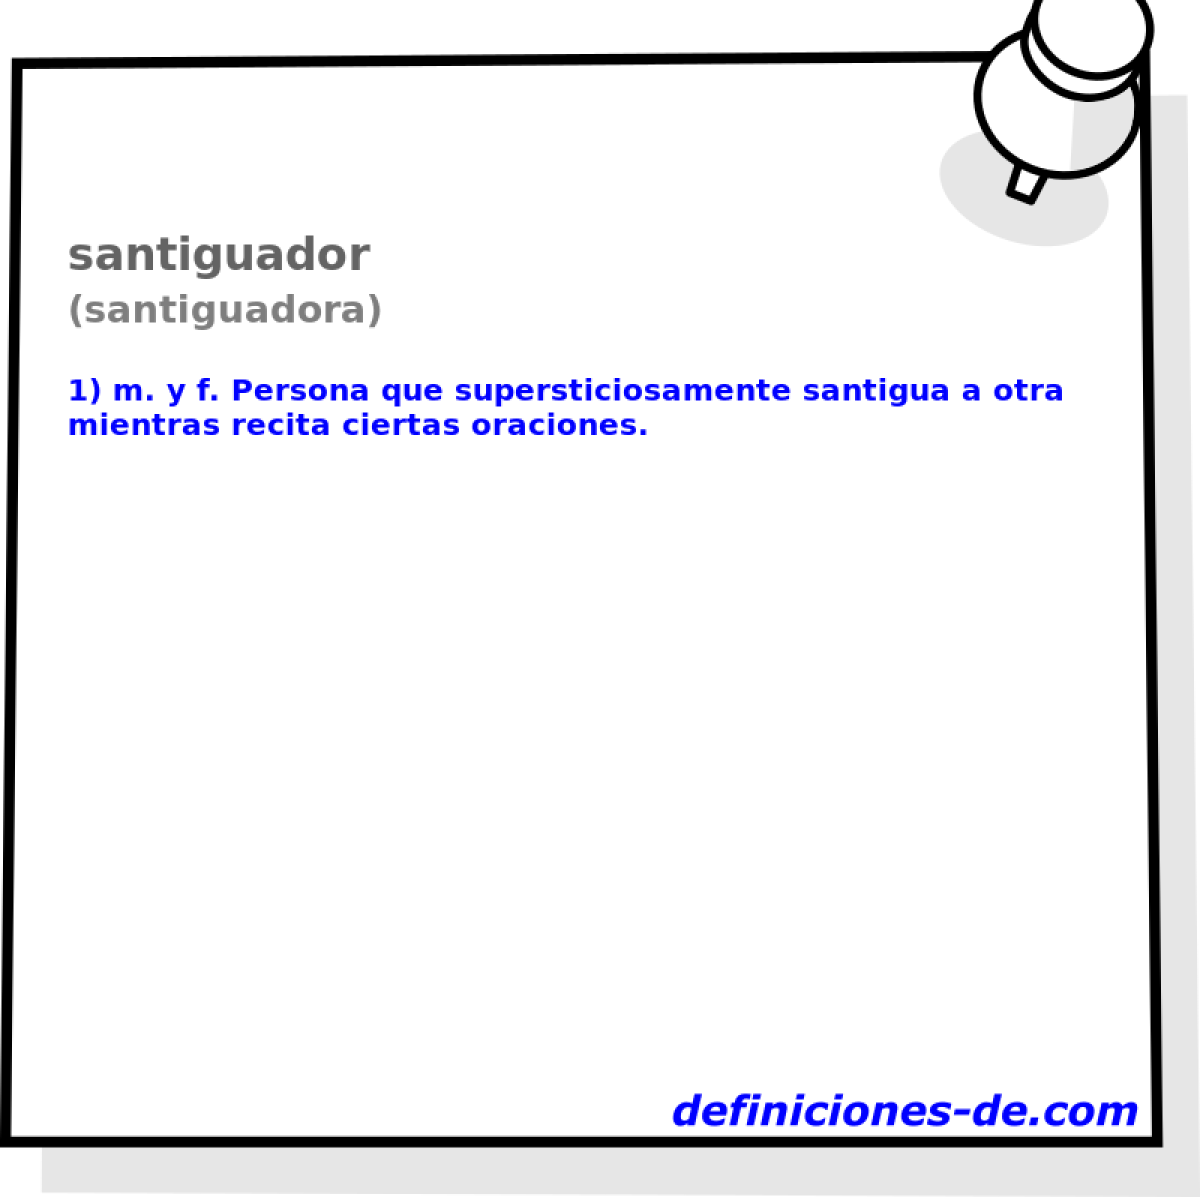 santiguador (santiguadora)